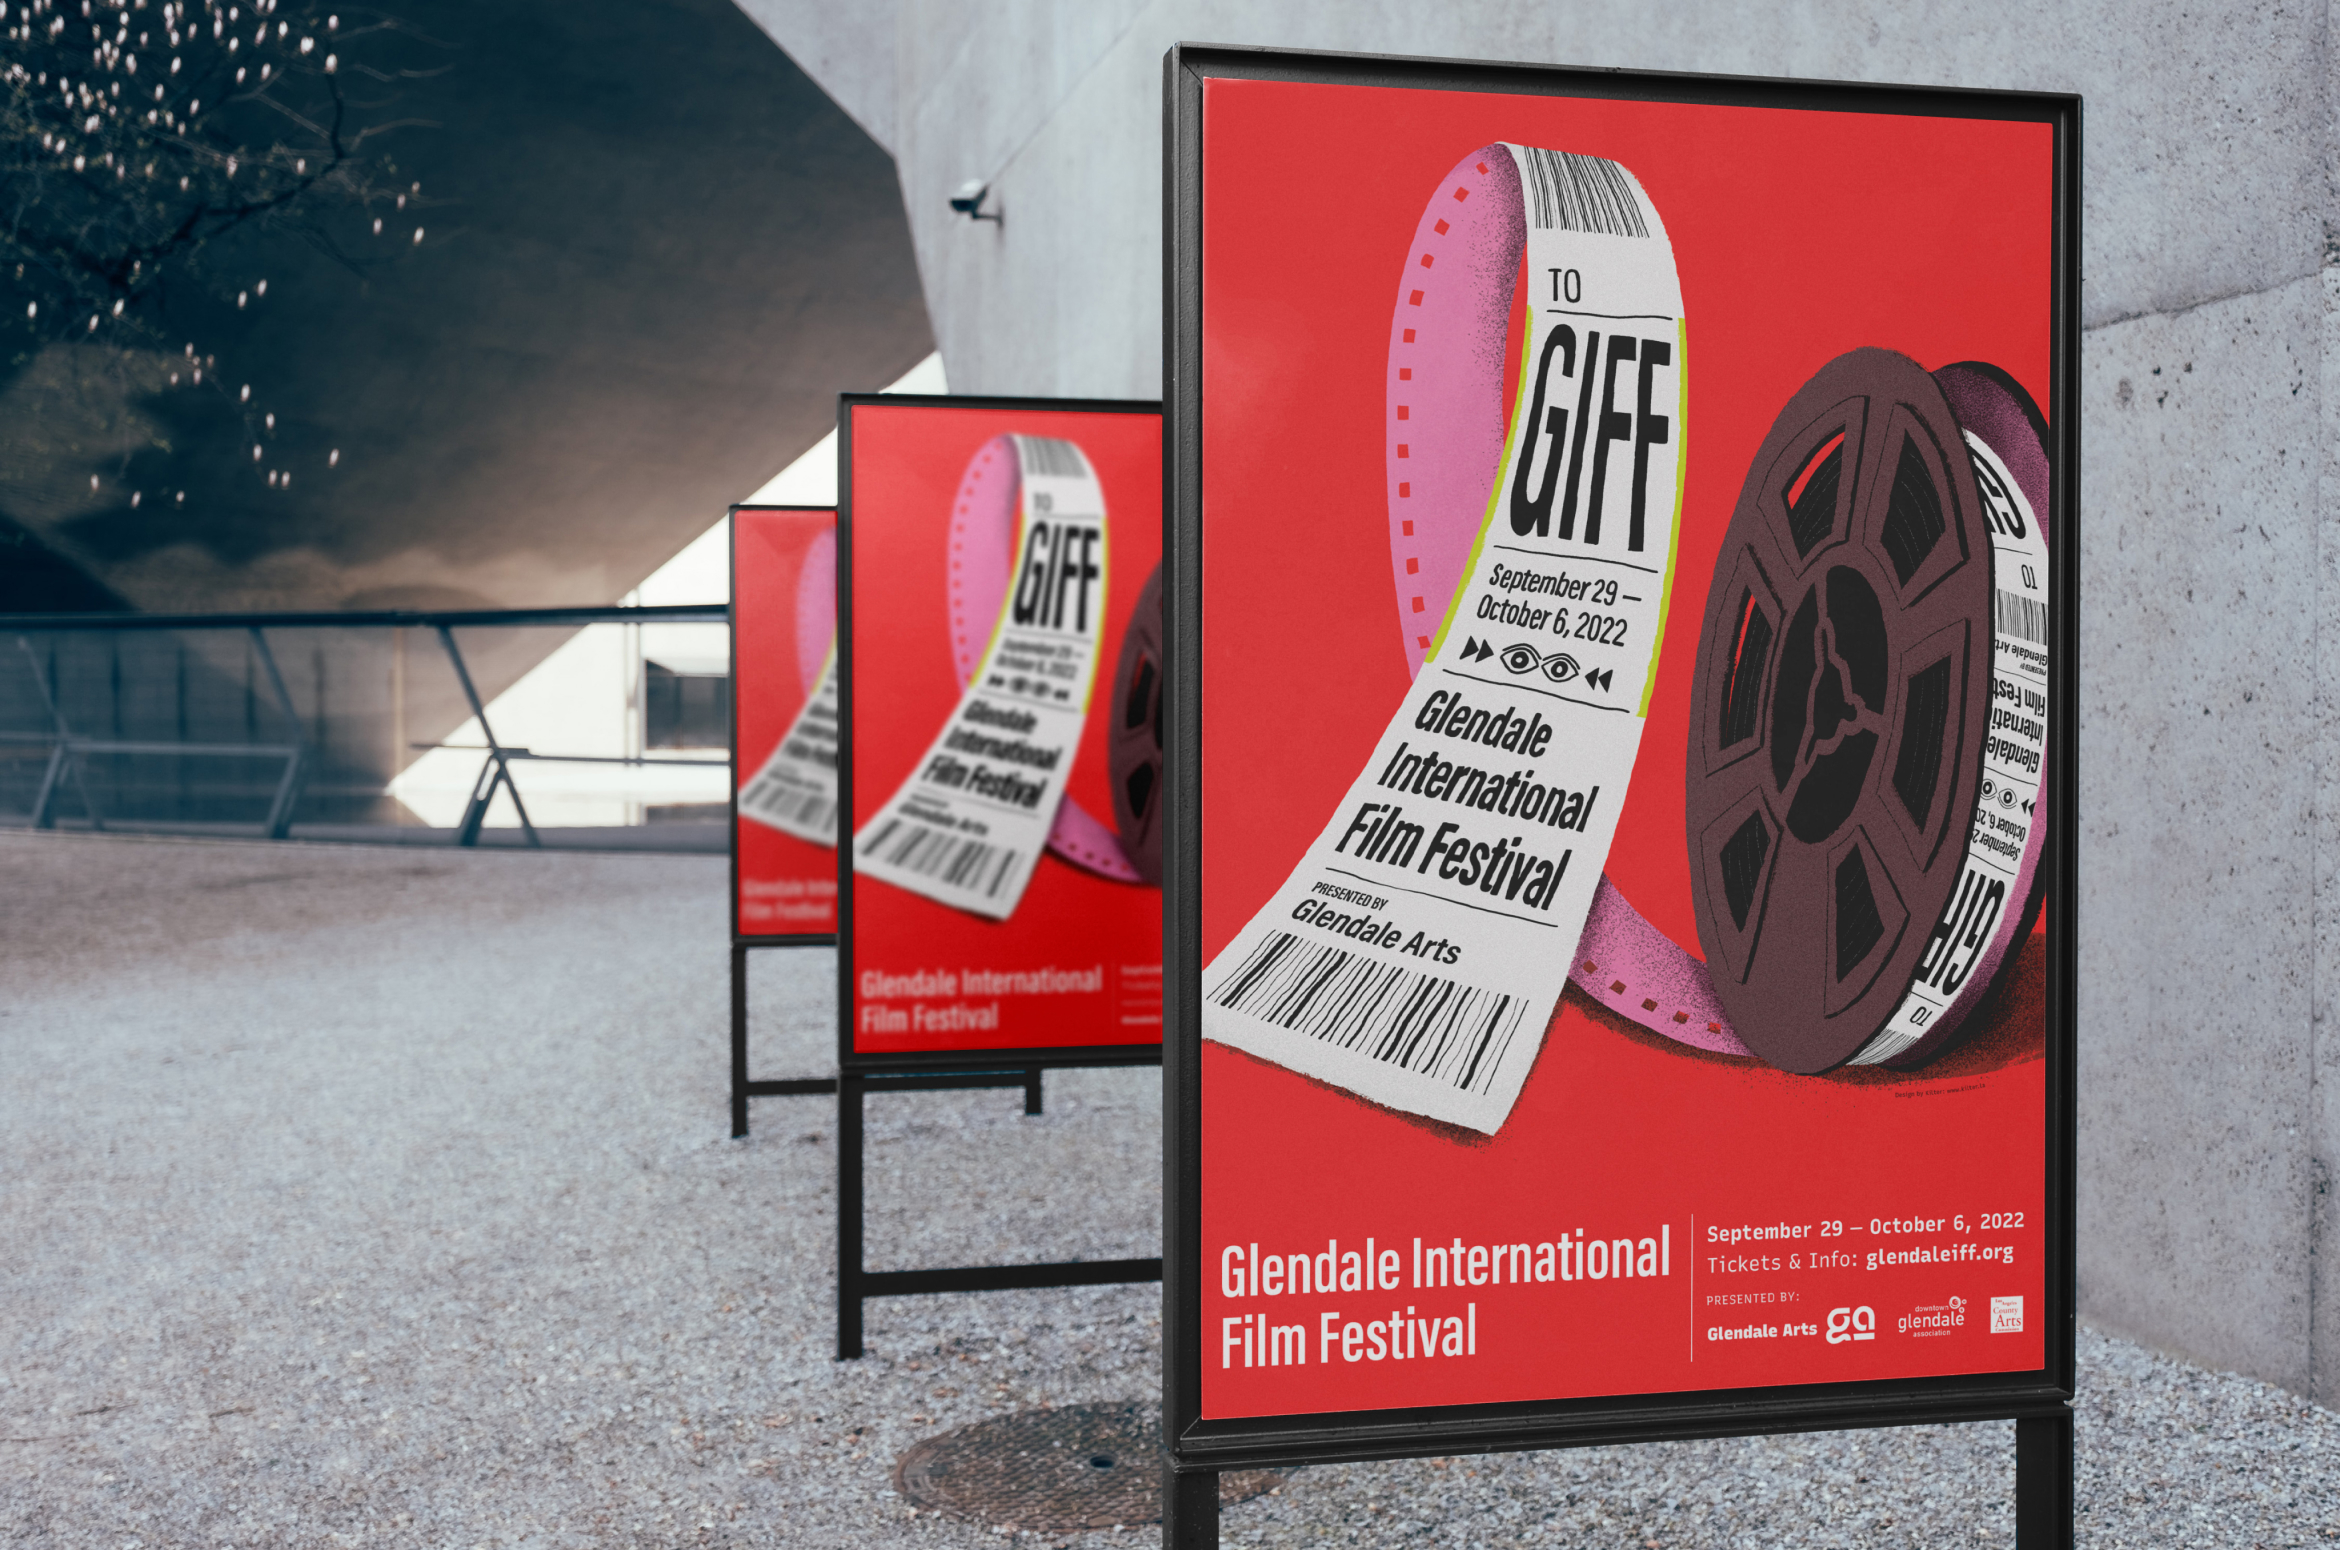 Glendale International Film Festival Posters designed by Kilter.